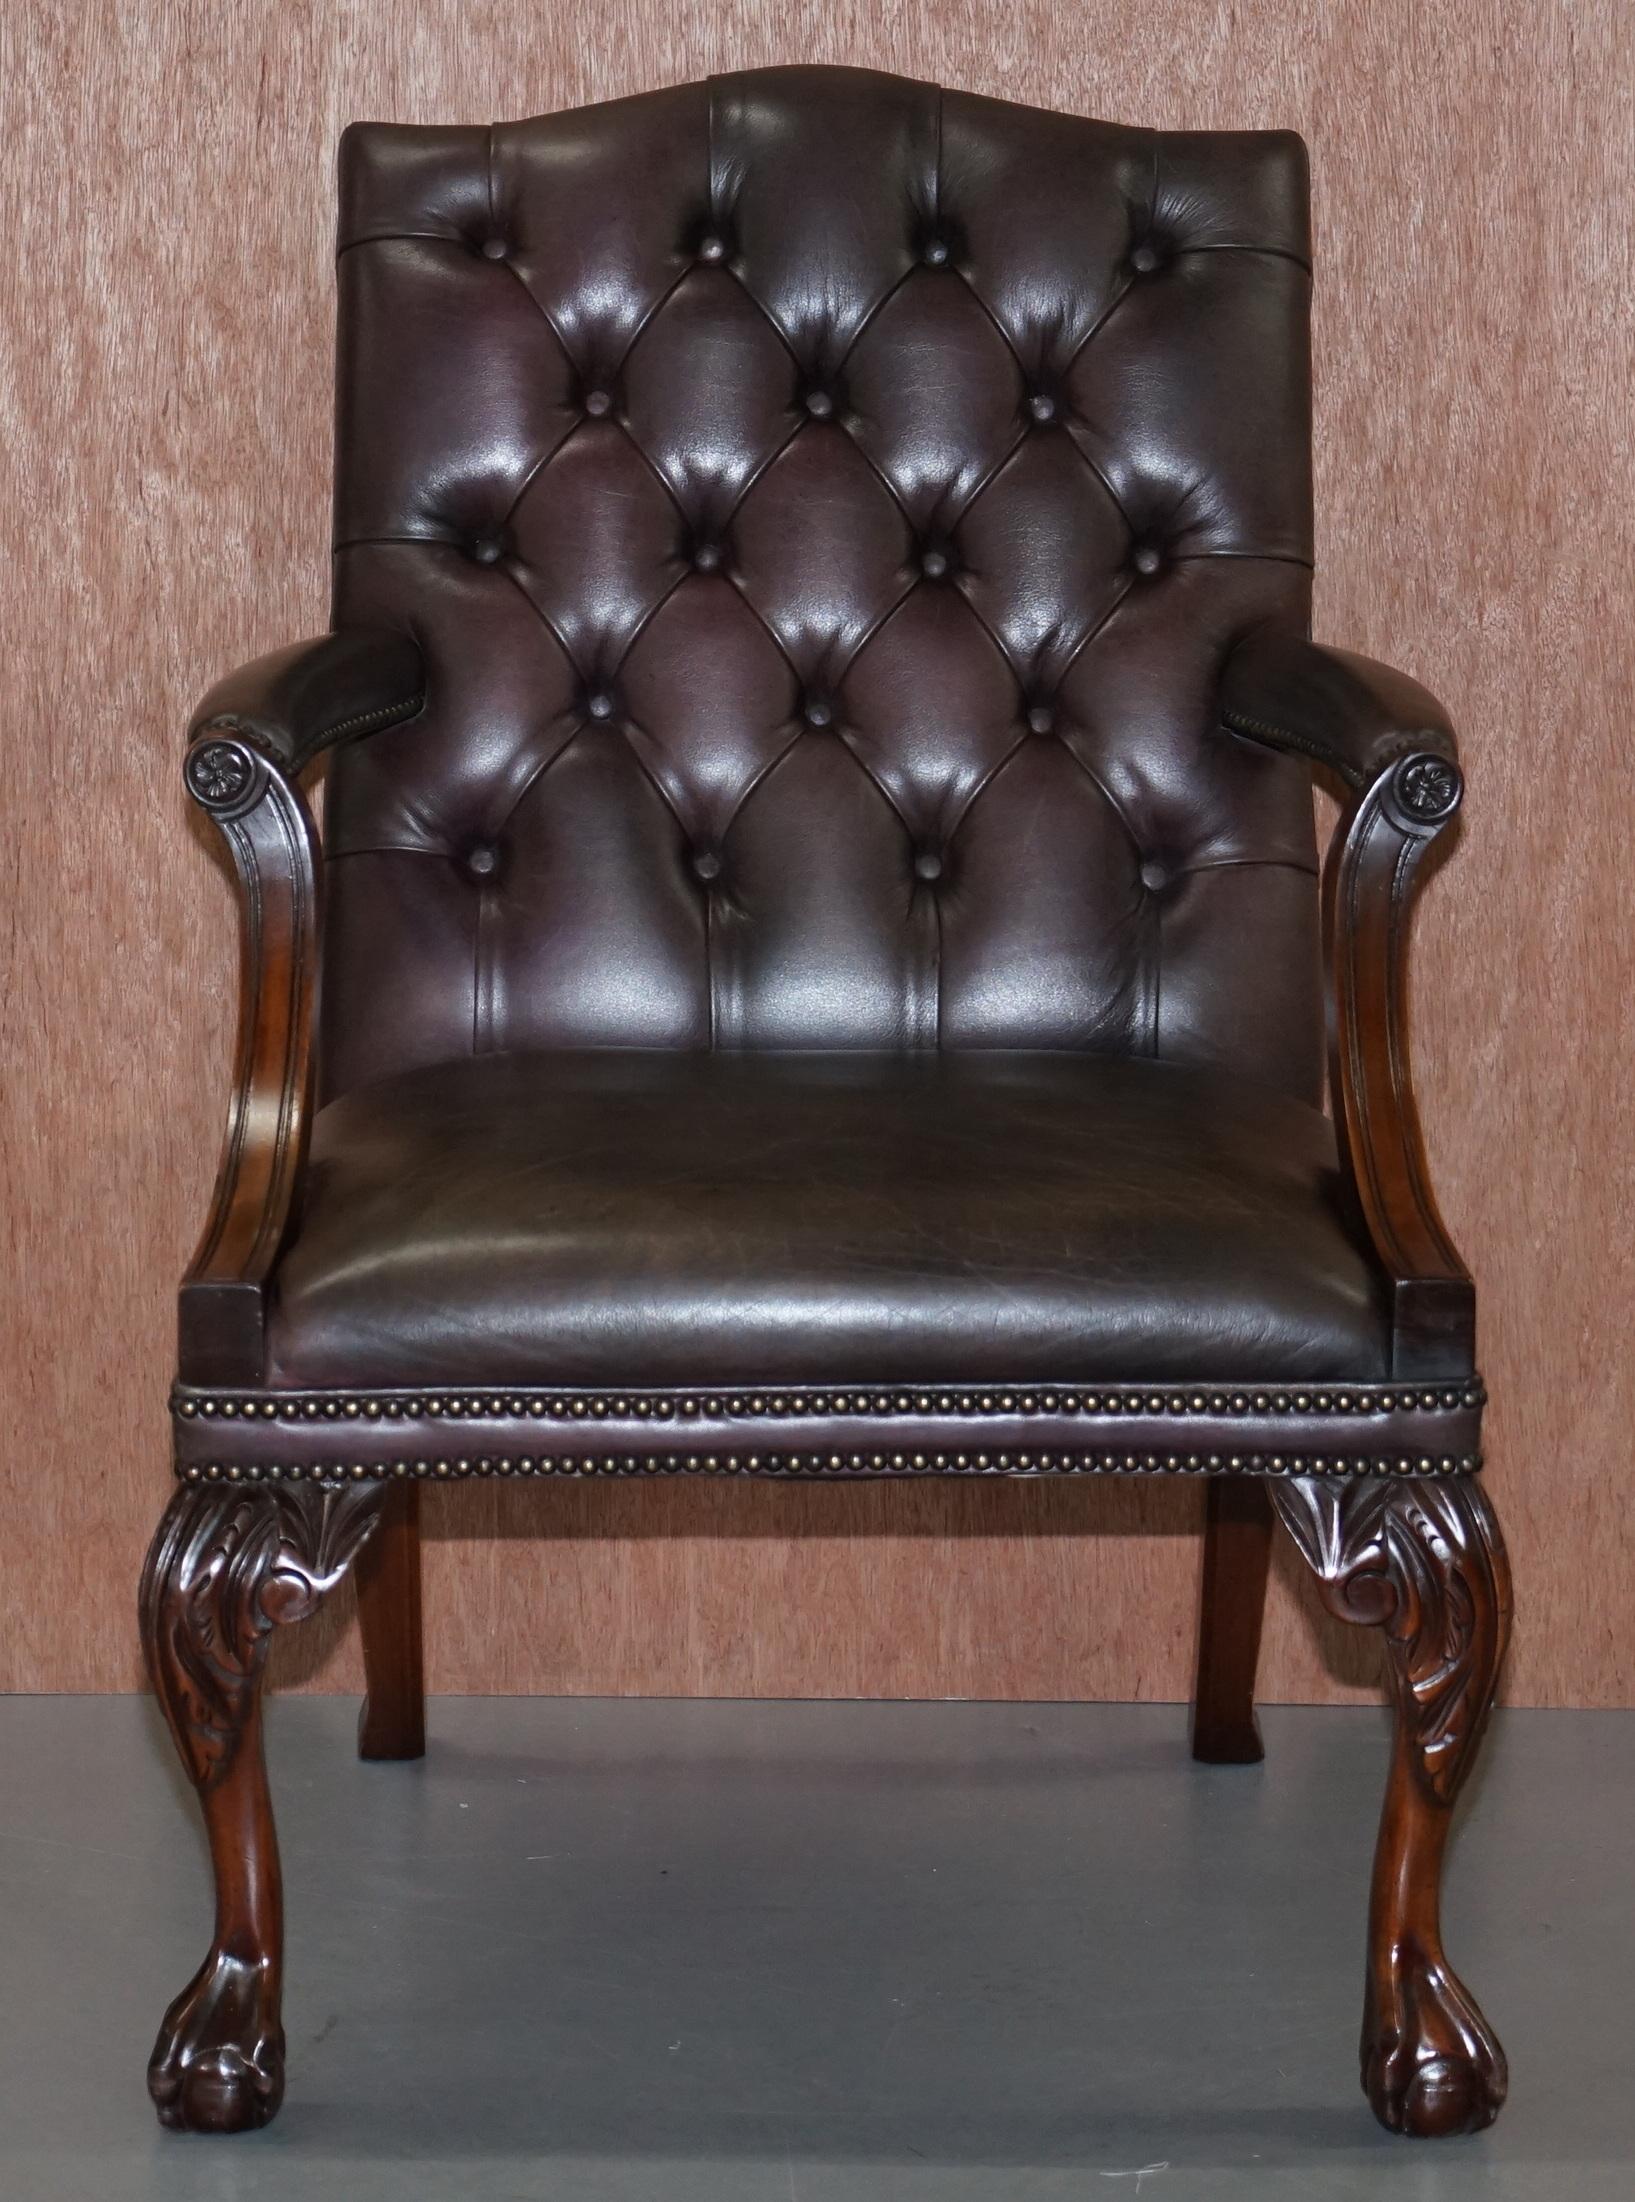 Wir freuen uns, diesen atemberaubenden handgeschnitzten Mahagoni-Sessel im George-II-Stil mit Krallen- und Kugelfüßen zum Verkauf anzubieten

Ein sehr gut aussehender, gut gemachter und dekorativer Sessel, die Lederpolsterung ist Chesterfield